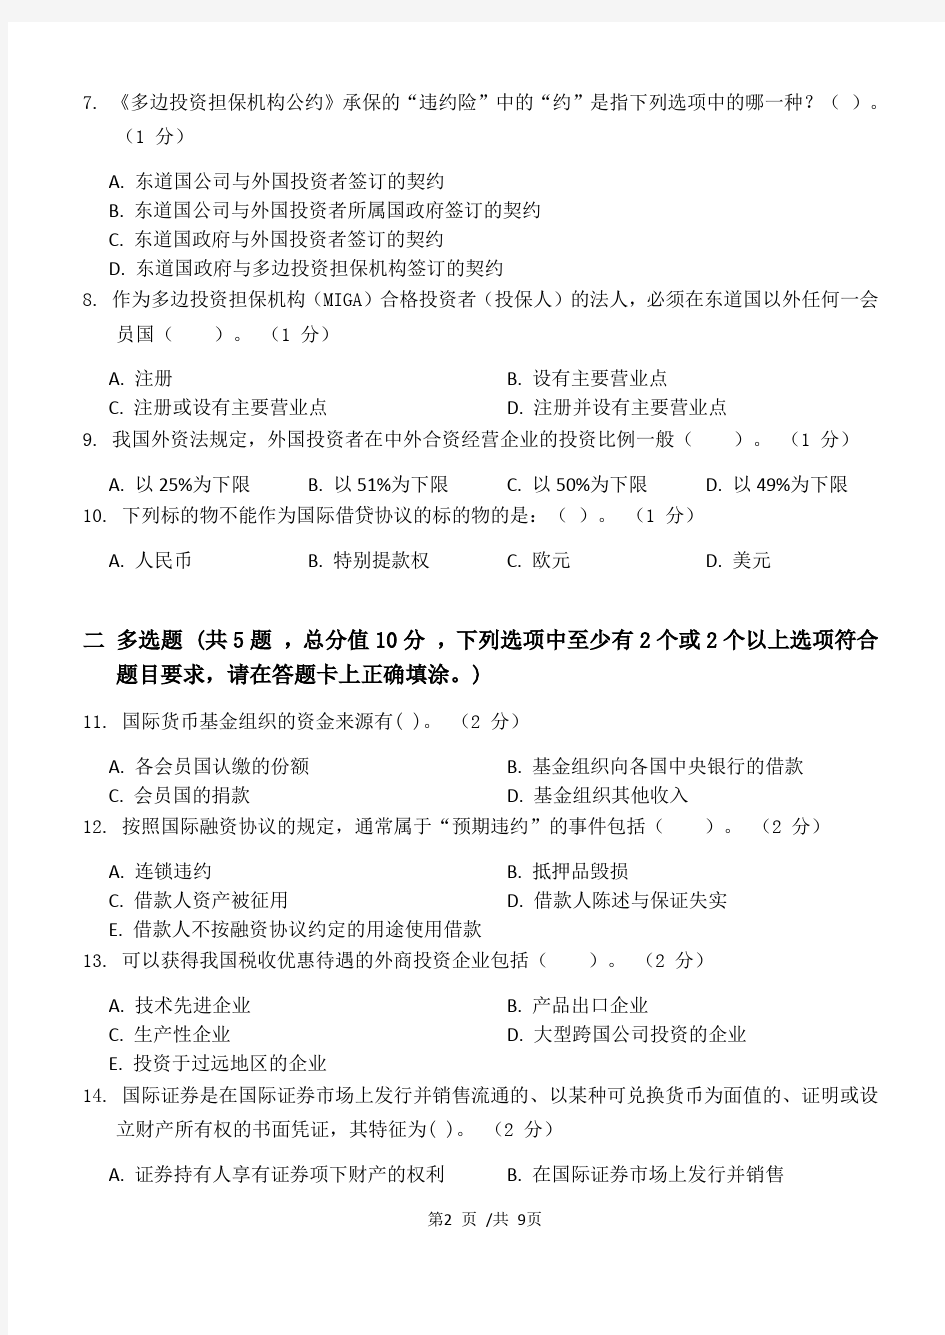 国际经济法学第2阶段练习题 2020年江南大学考试题库及答案 一科共有三个阶段,这是其中一个阶段。